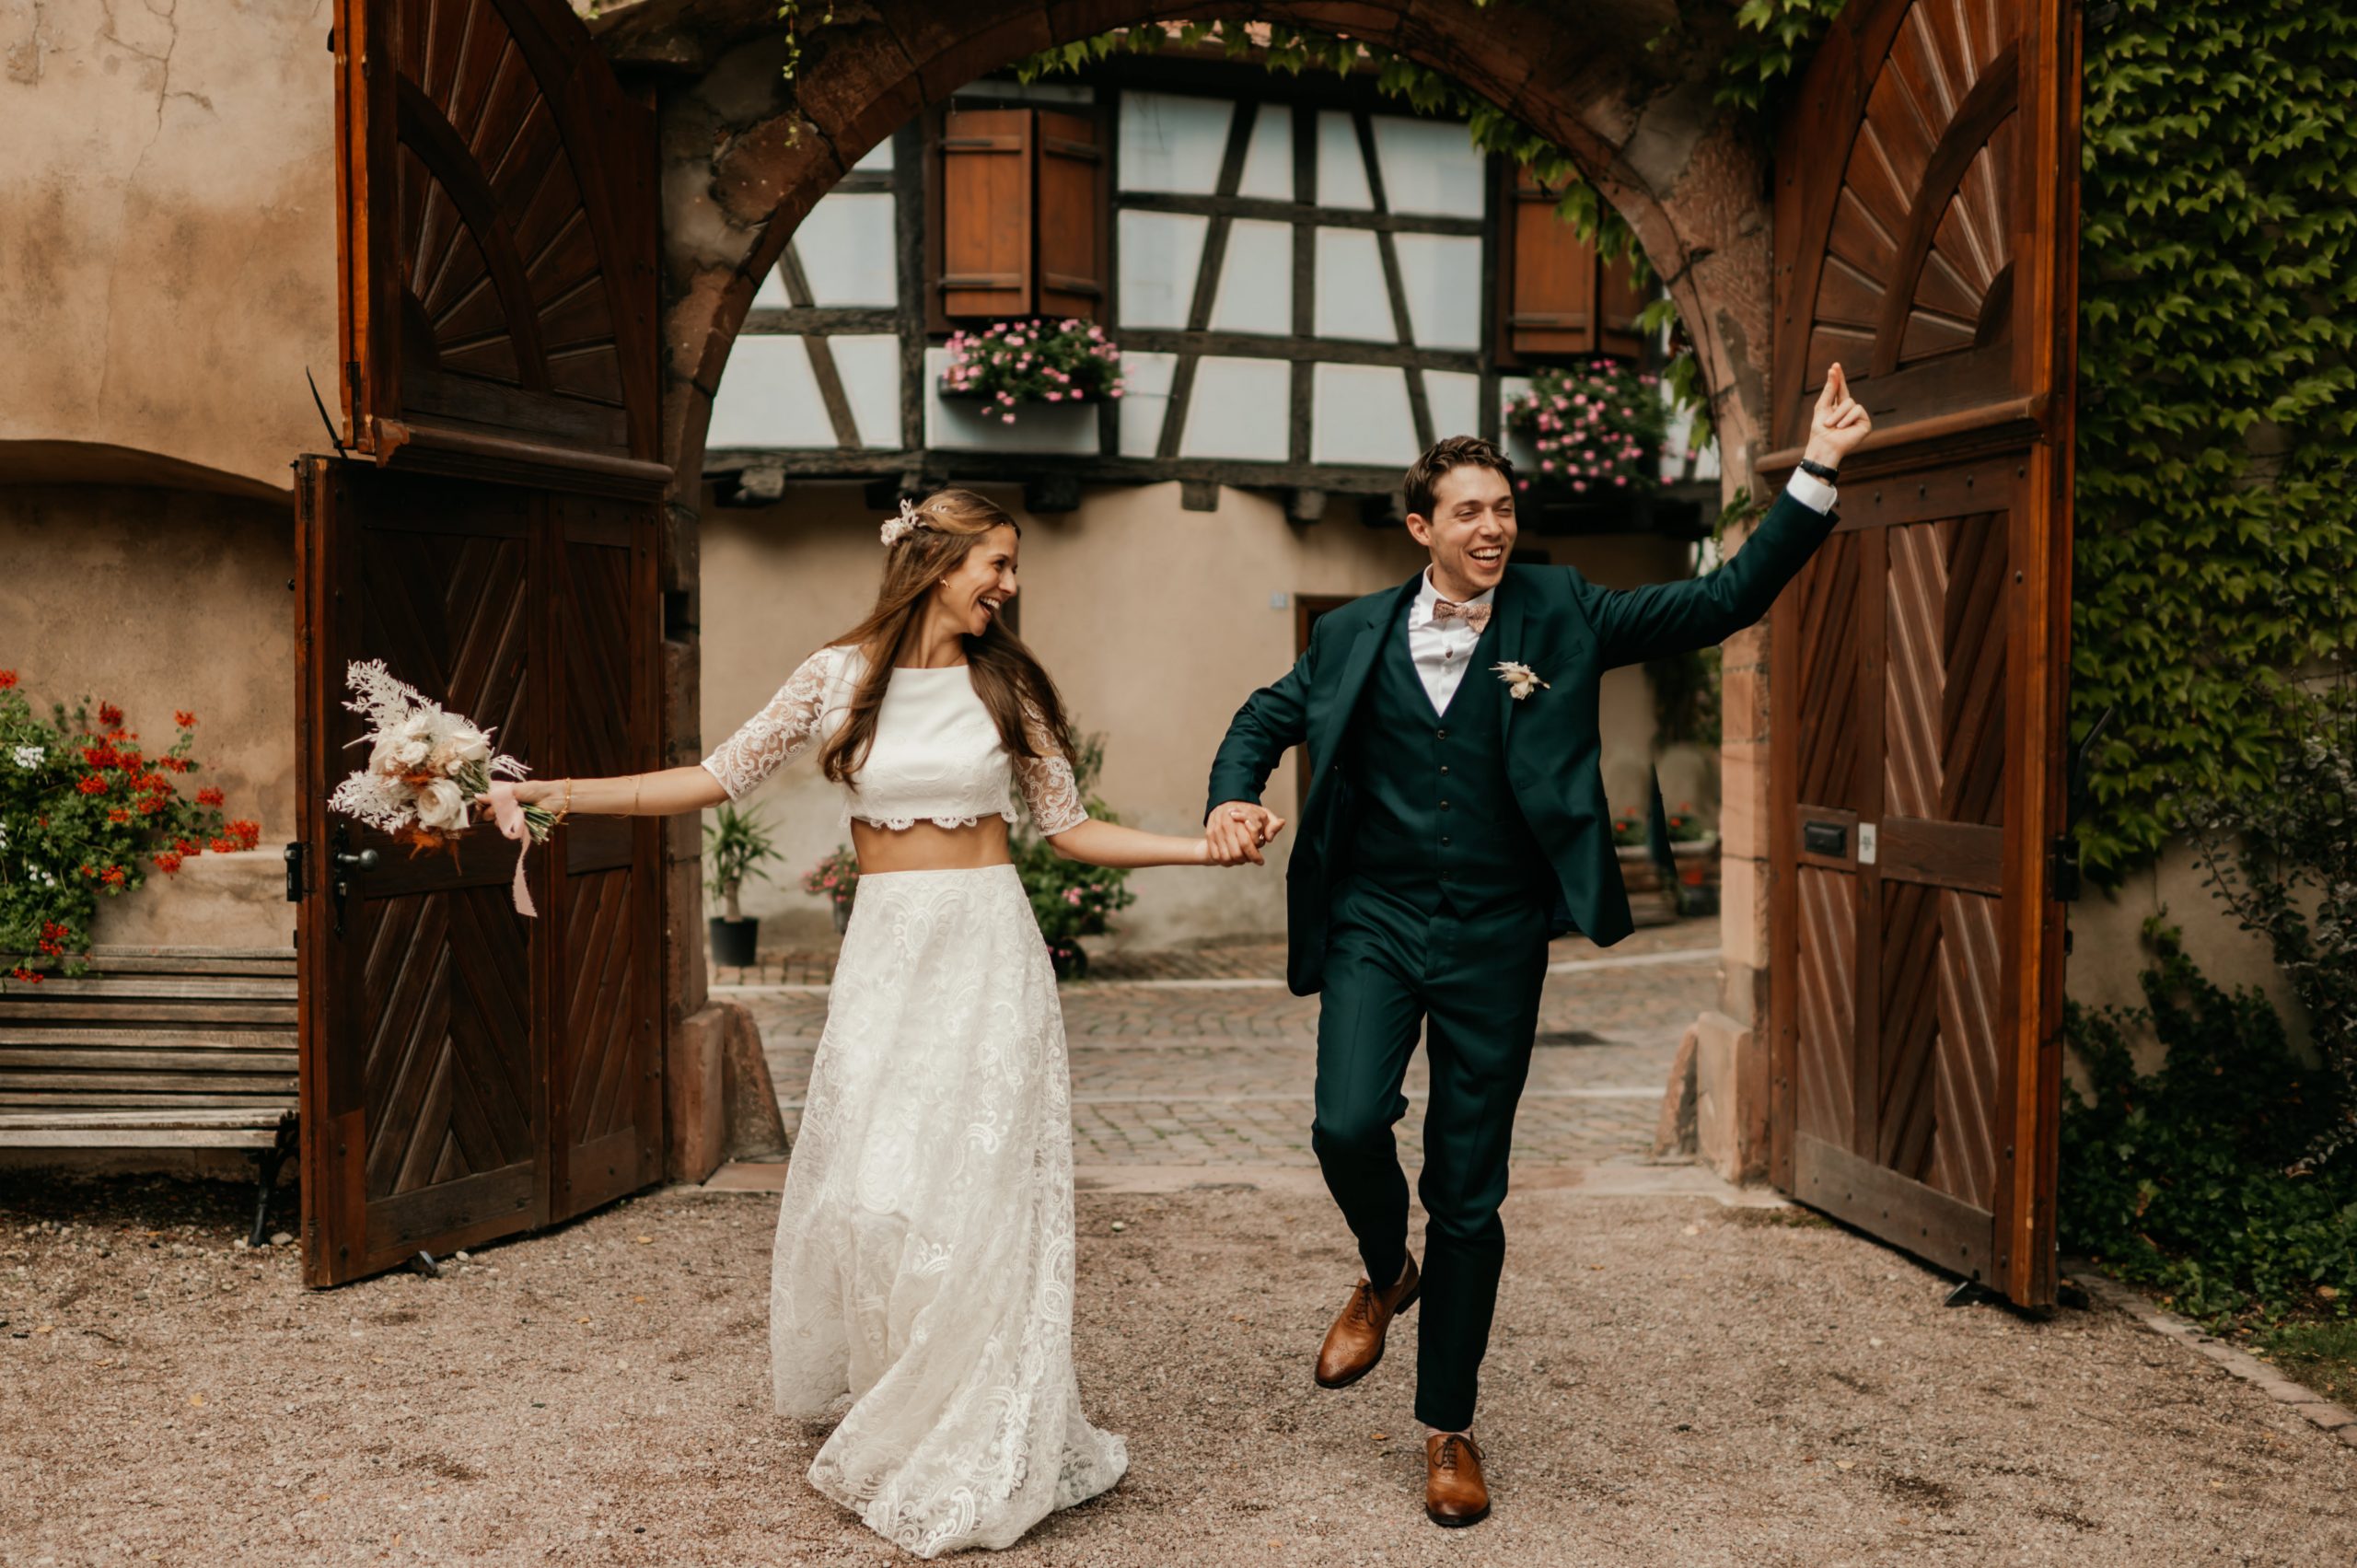 Sam et Laure faisant leur entrée dans la cour d'une maison alsacienne, photo de mariage par Pauline Kupper, photographe Alsace